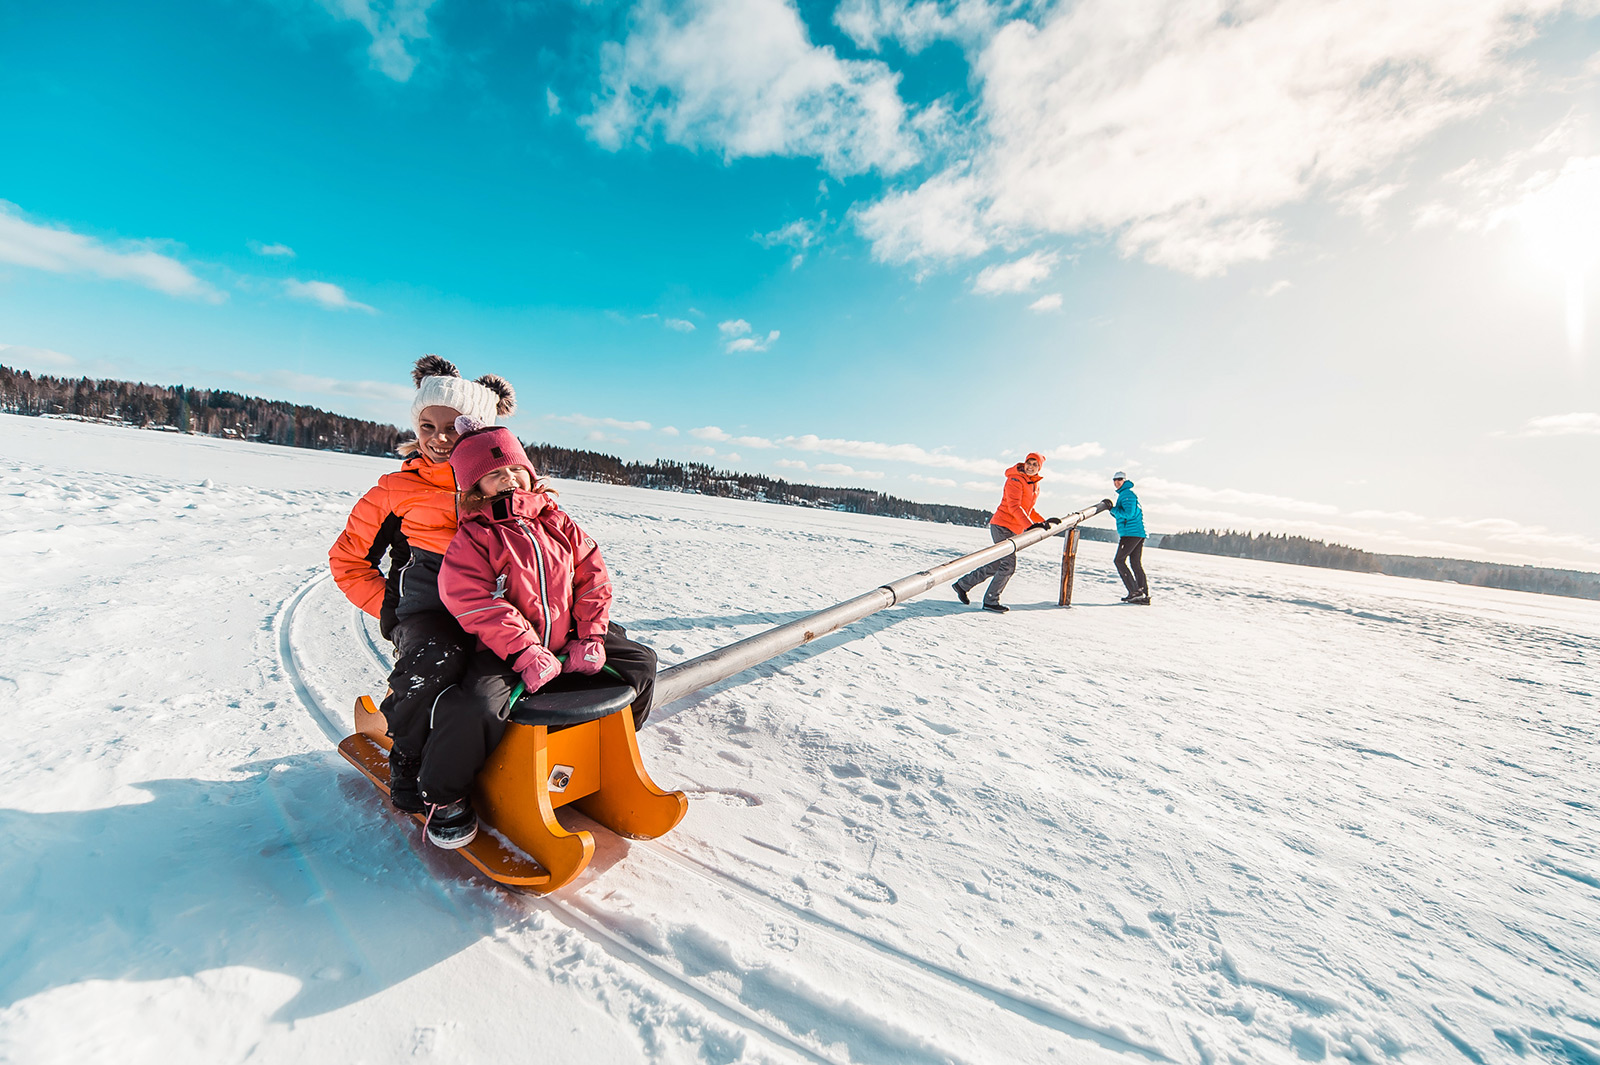 Äiti ja isä pyörittää kahta lastaan napakelkassa Pajulahdessa kukkasjärven jään lumella.